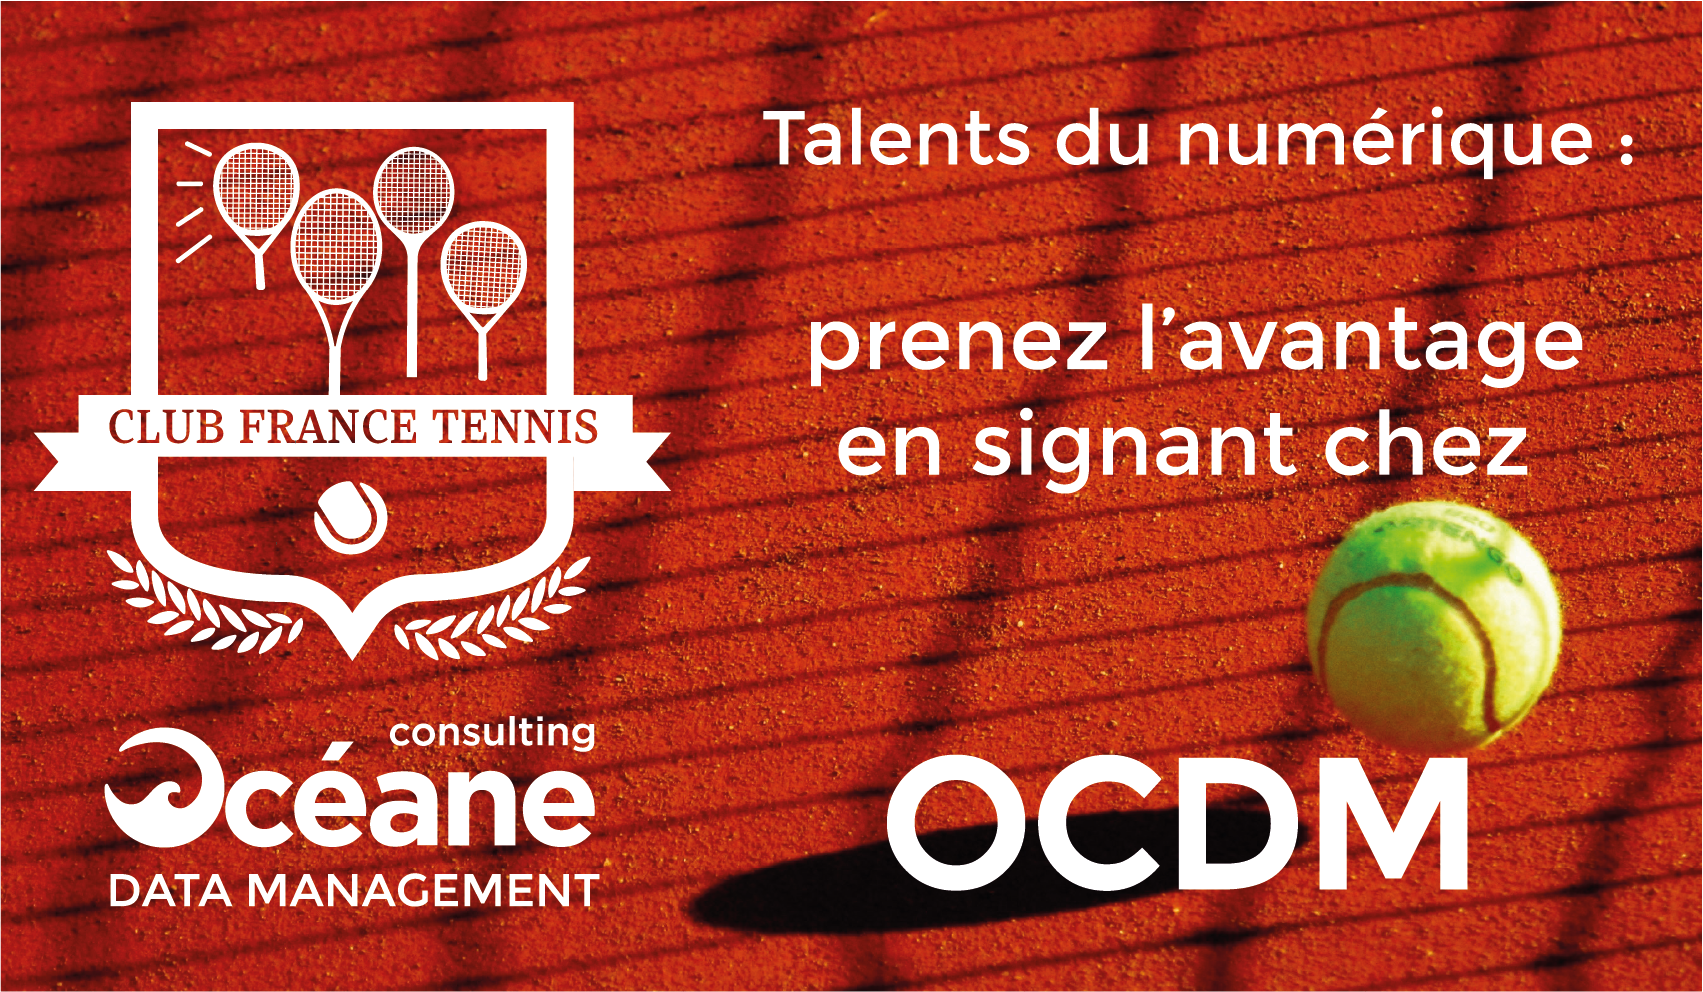 Talents du numérique : prenez l’avantage en signant chez Océane Consulting Data Management, sponsor officiel du Club France Tennis !